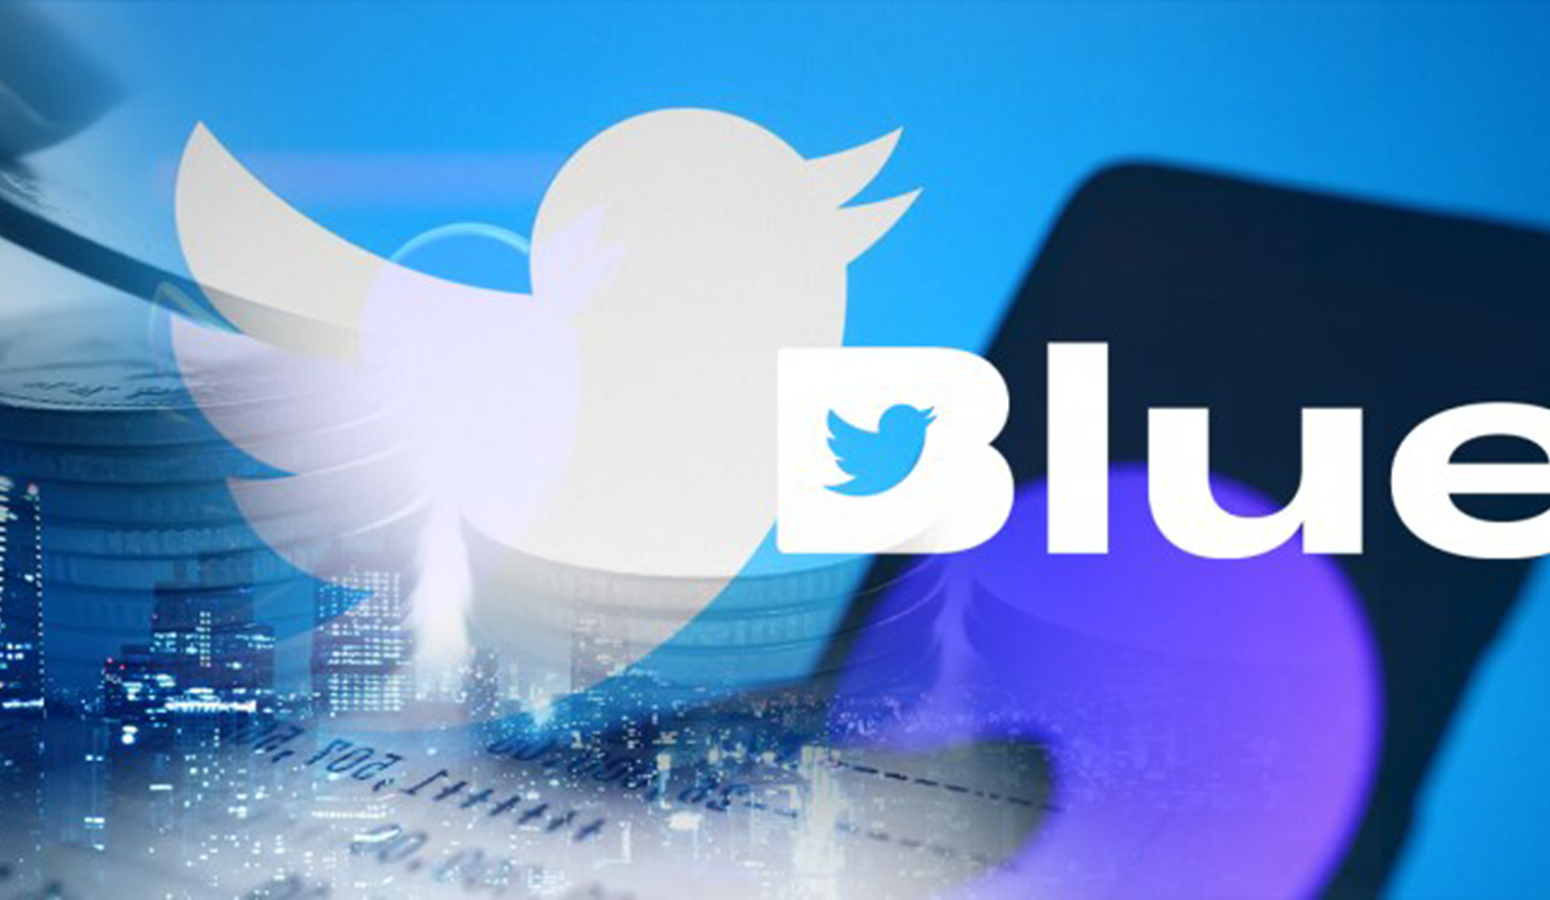 Los usuarios suscritos a Twitter Blue tendrán una modificación en las características del servicio que adquirieron. Foto: difusión.